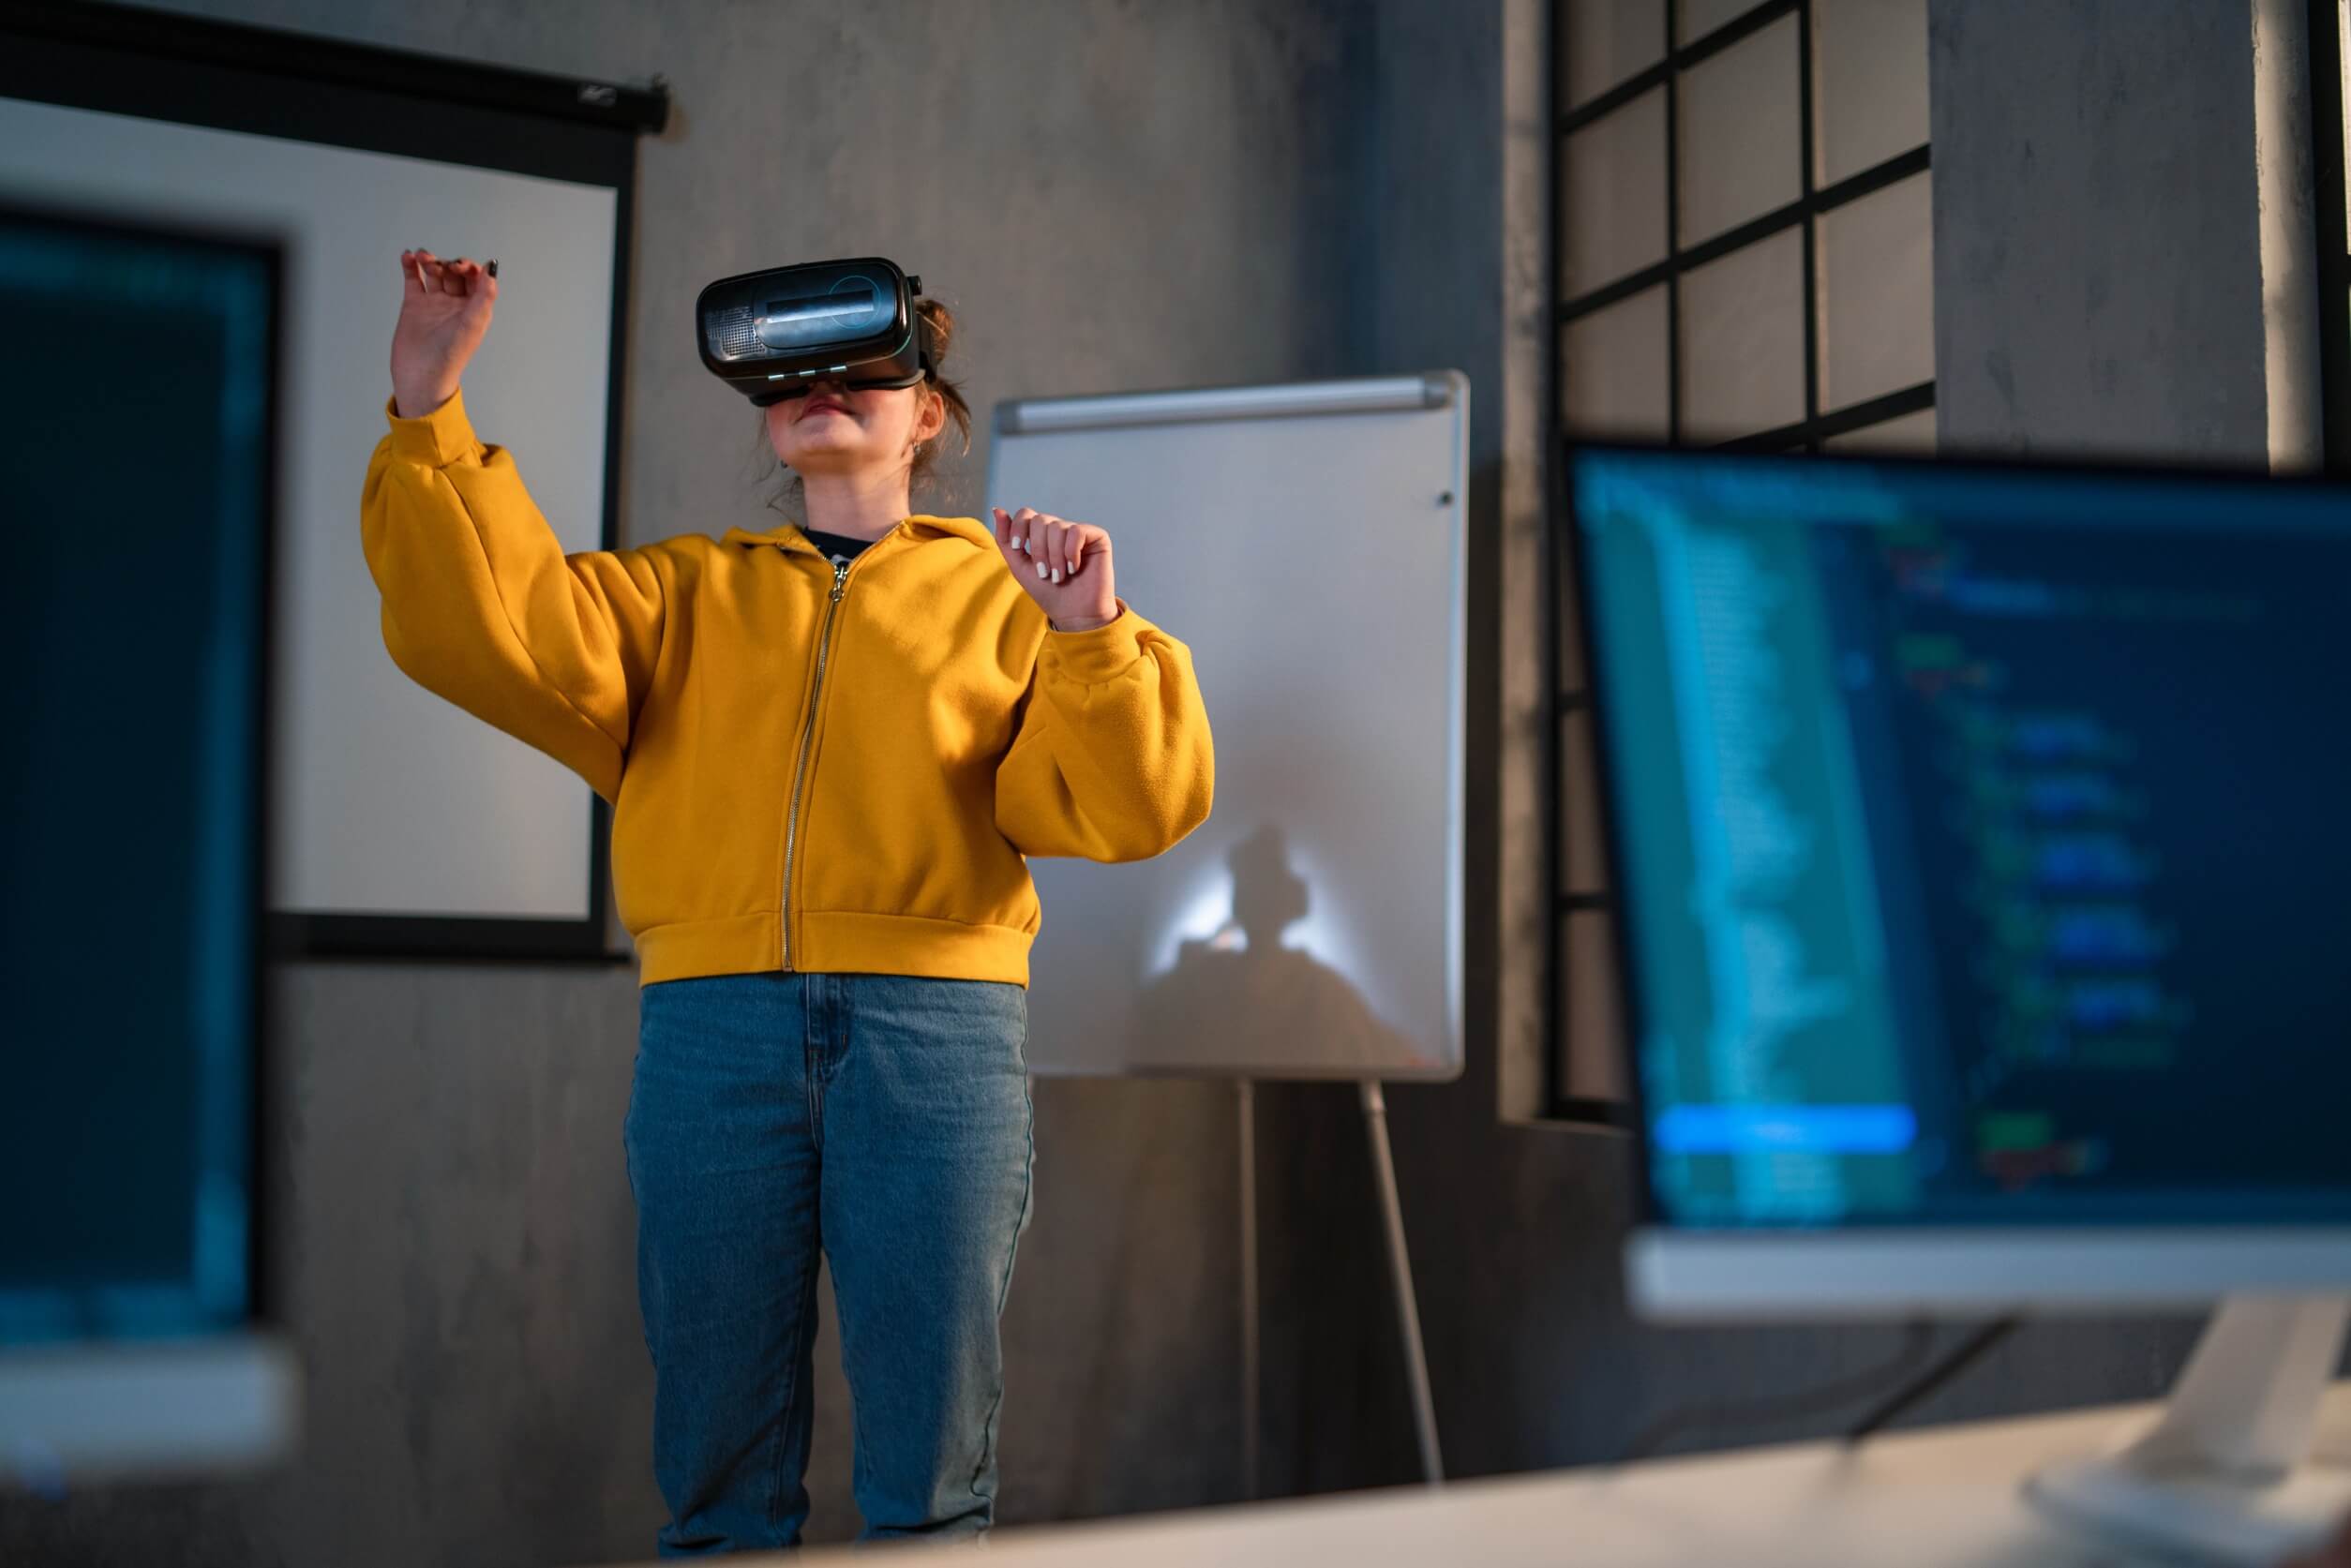 Qué es la realidad virtual?